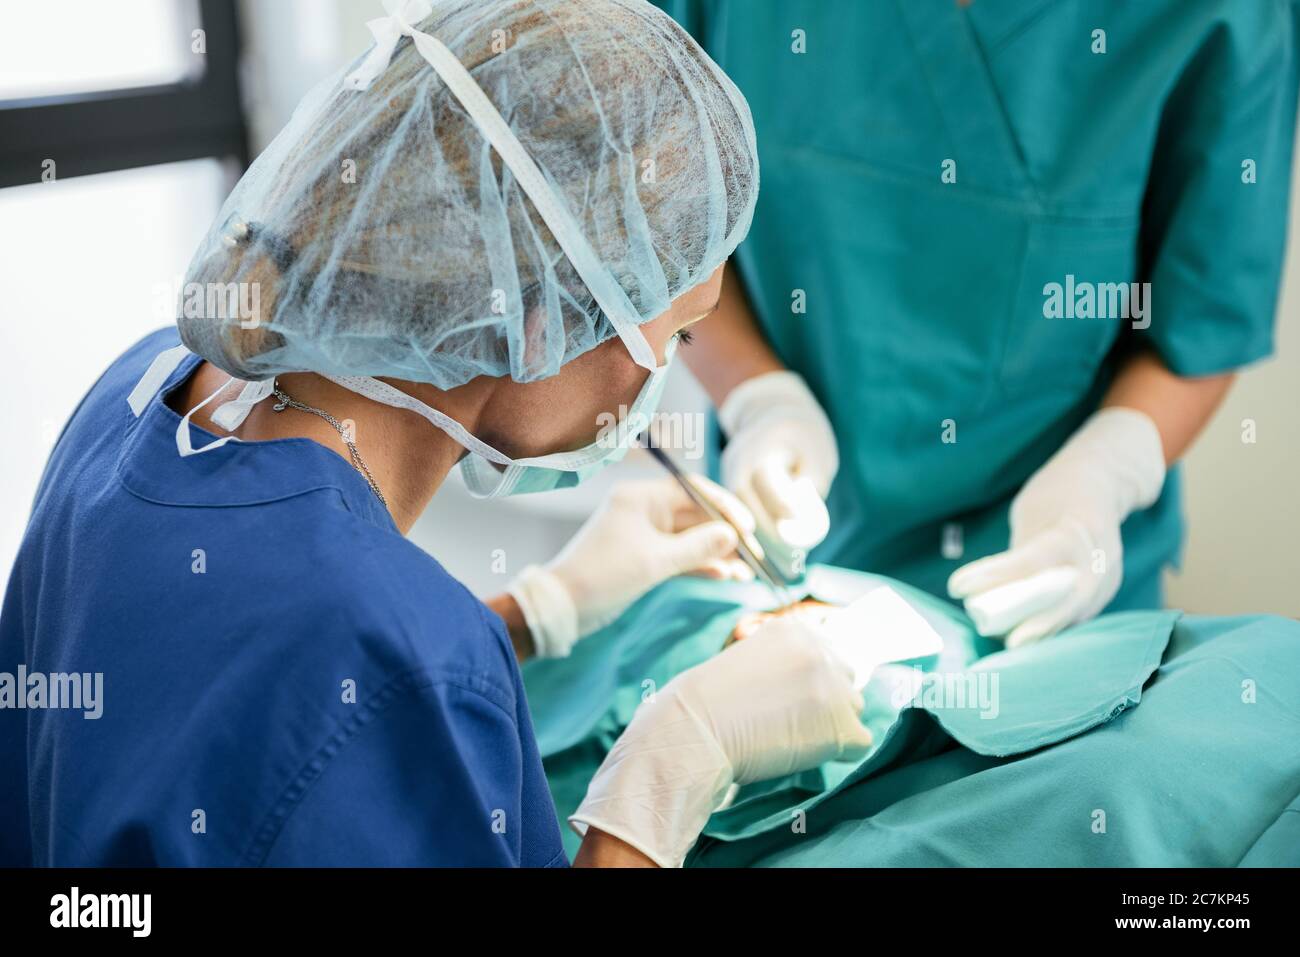 Équipe de chirurgie dans la salle d'opération. Médecin professionnel effectuant la chirurgie Banque D'Images